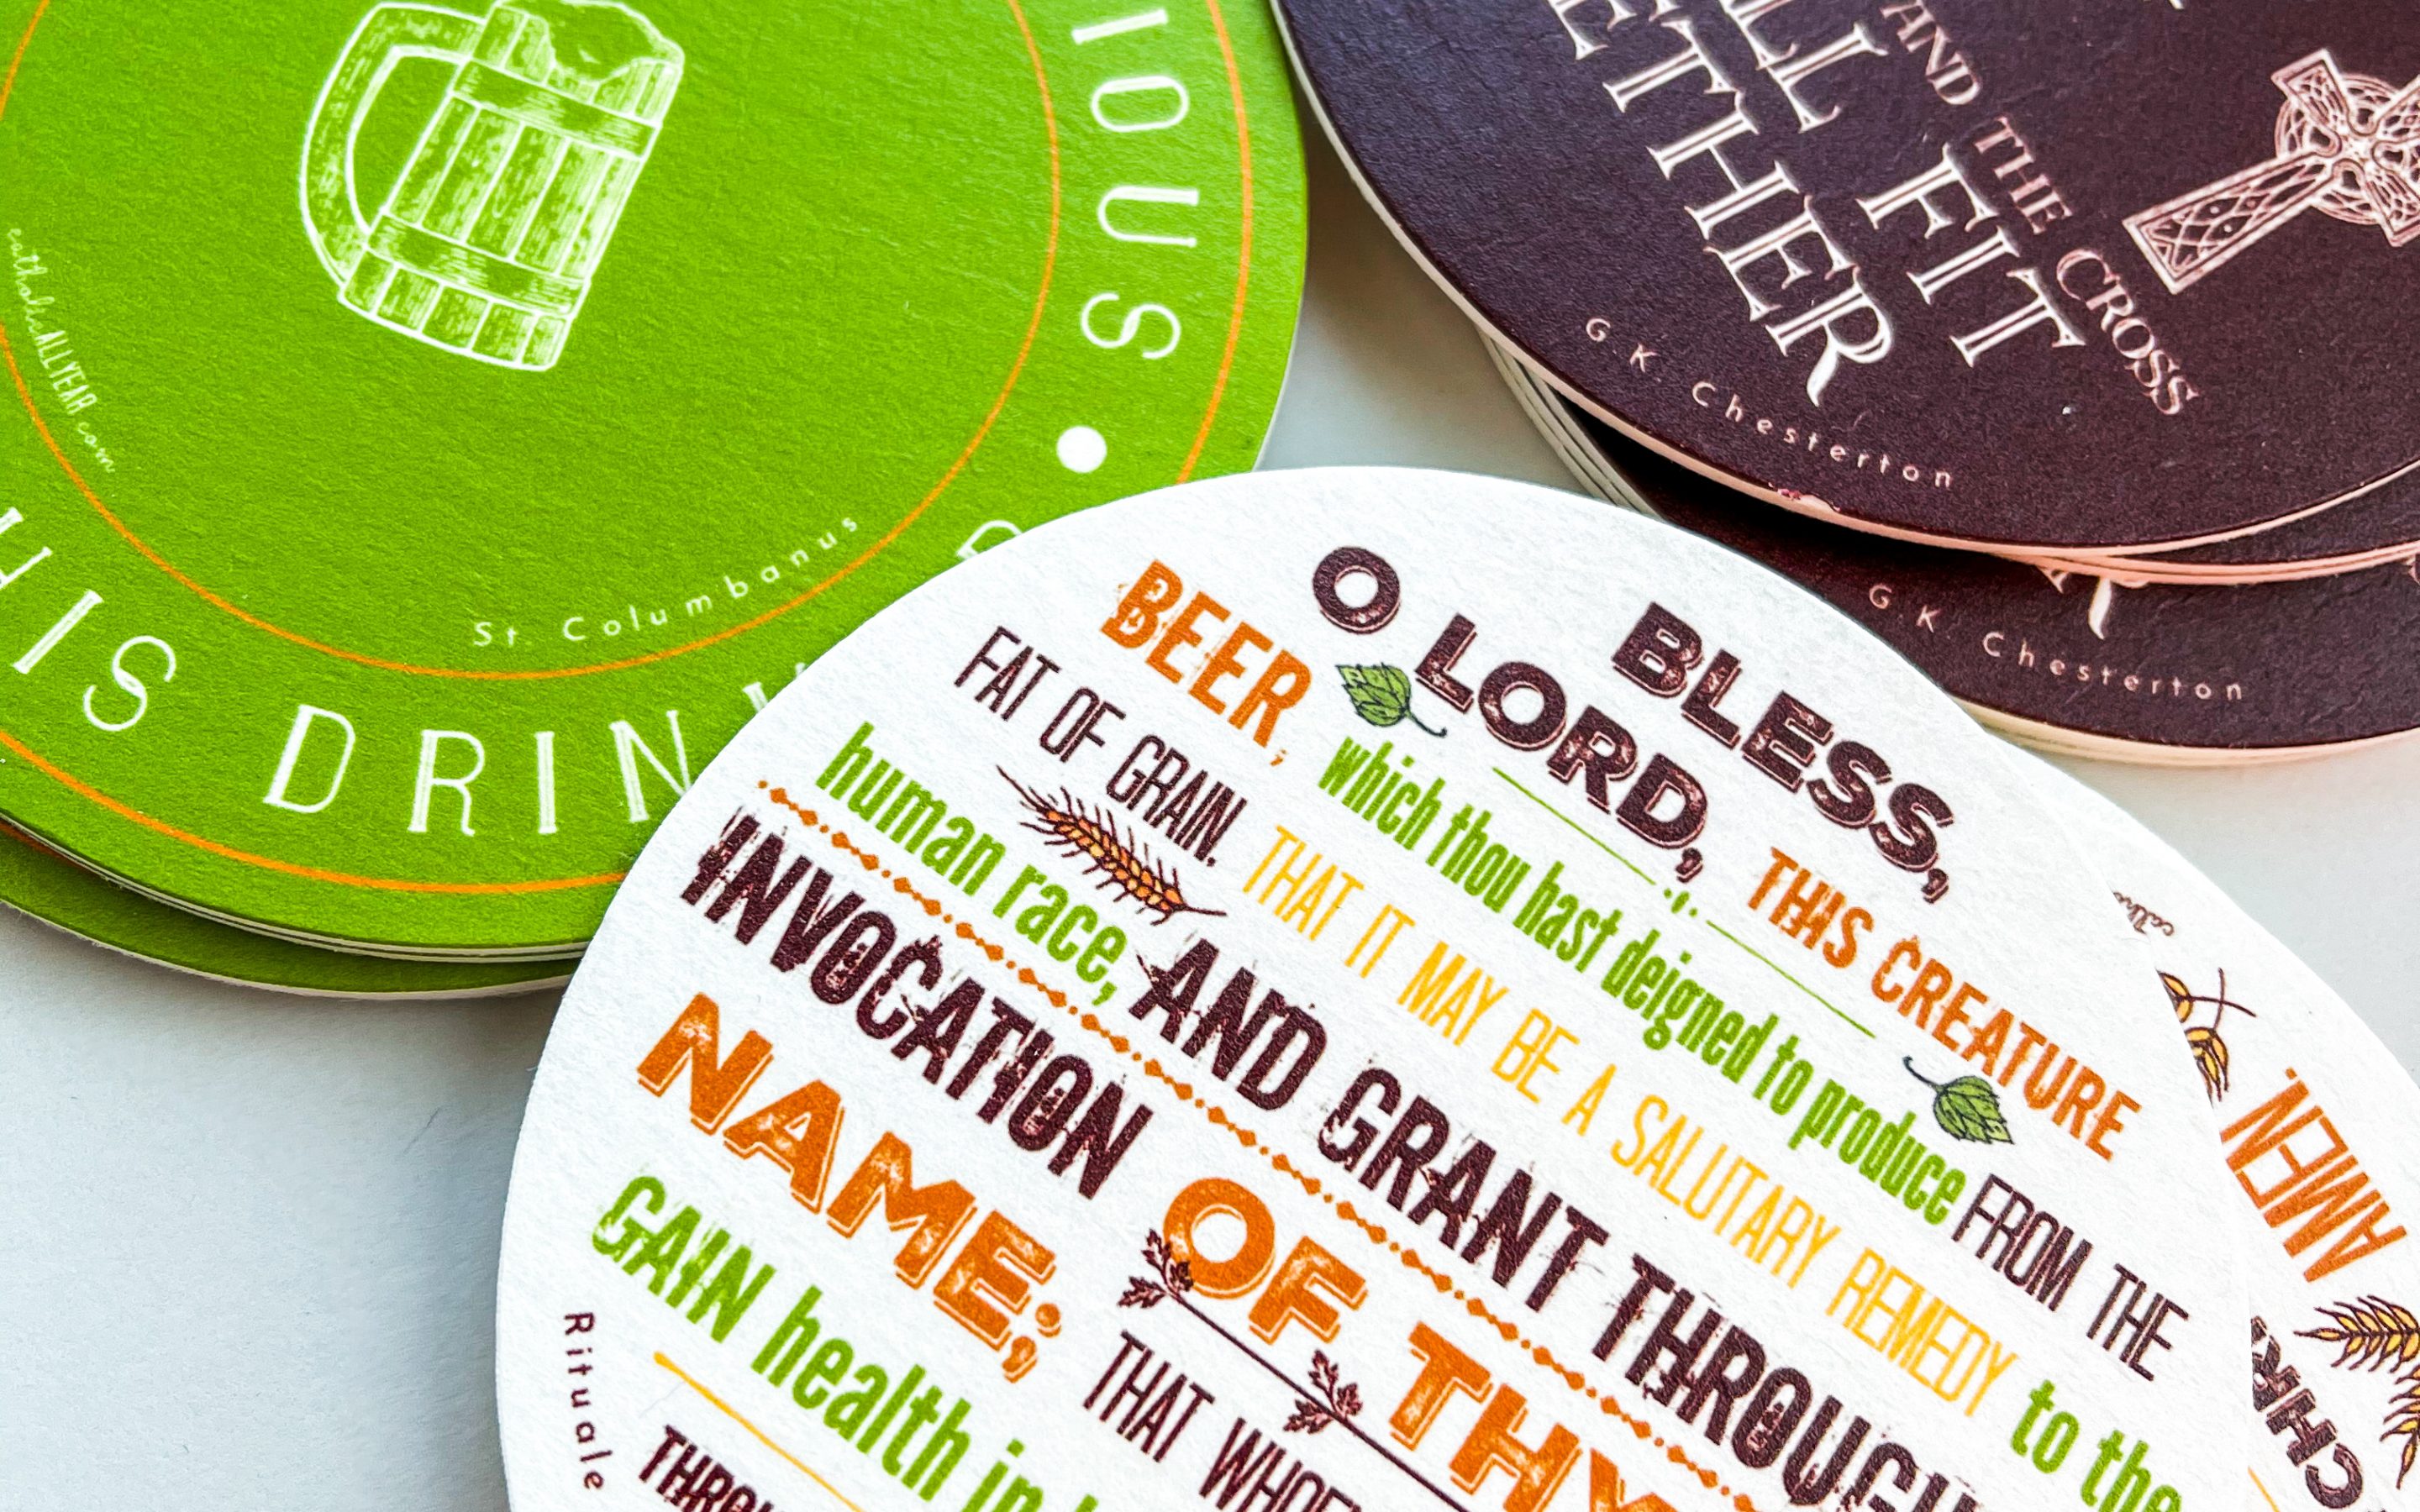 Catholic Beer Quote Coasters